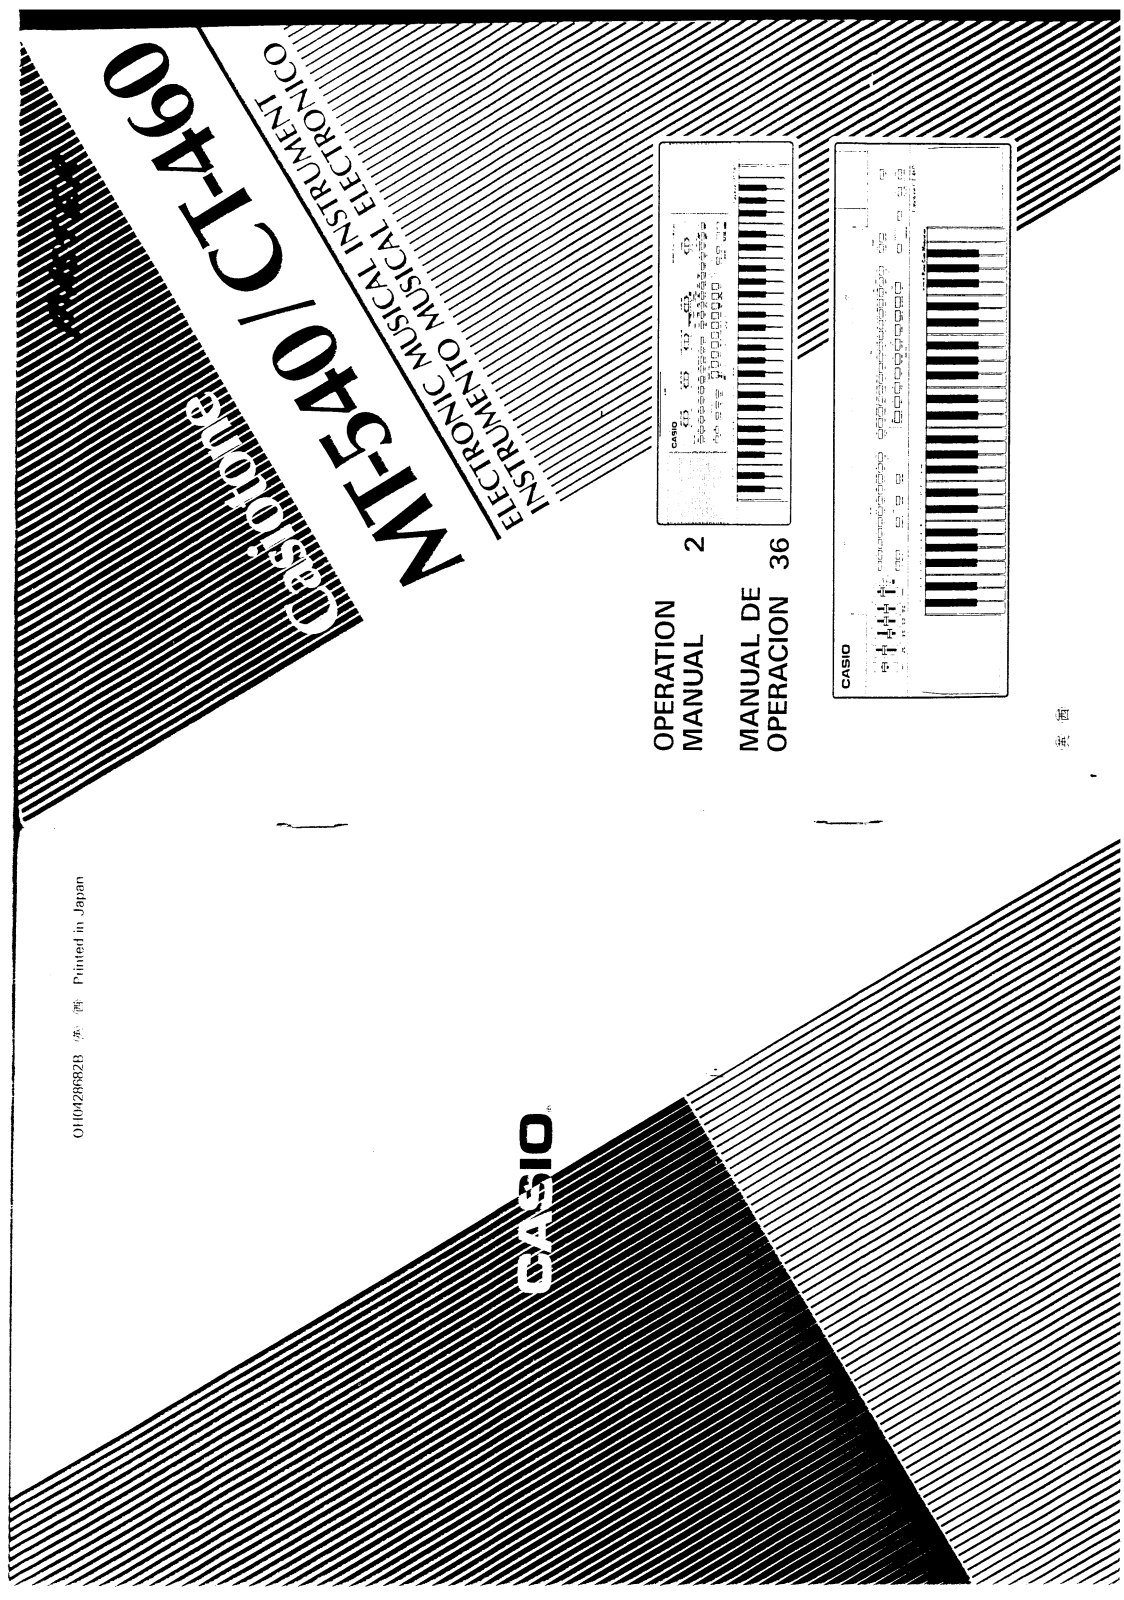 Casio CT-460 User Manual